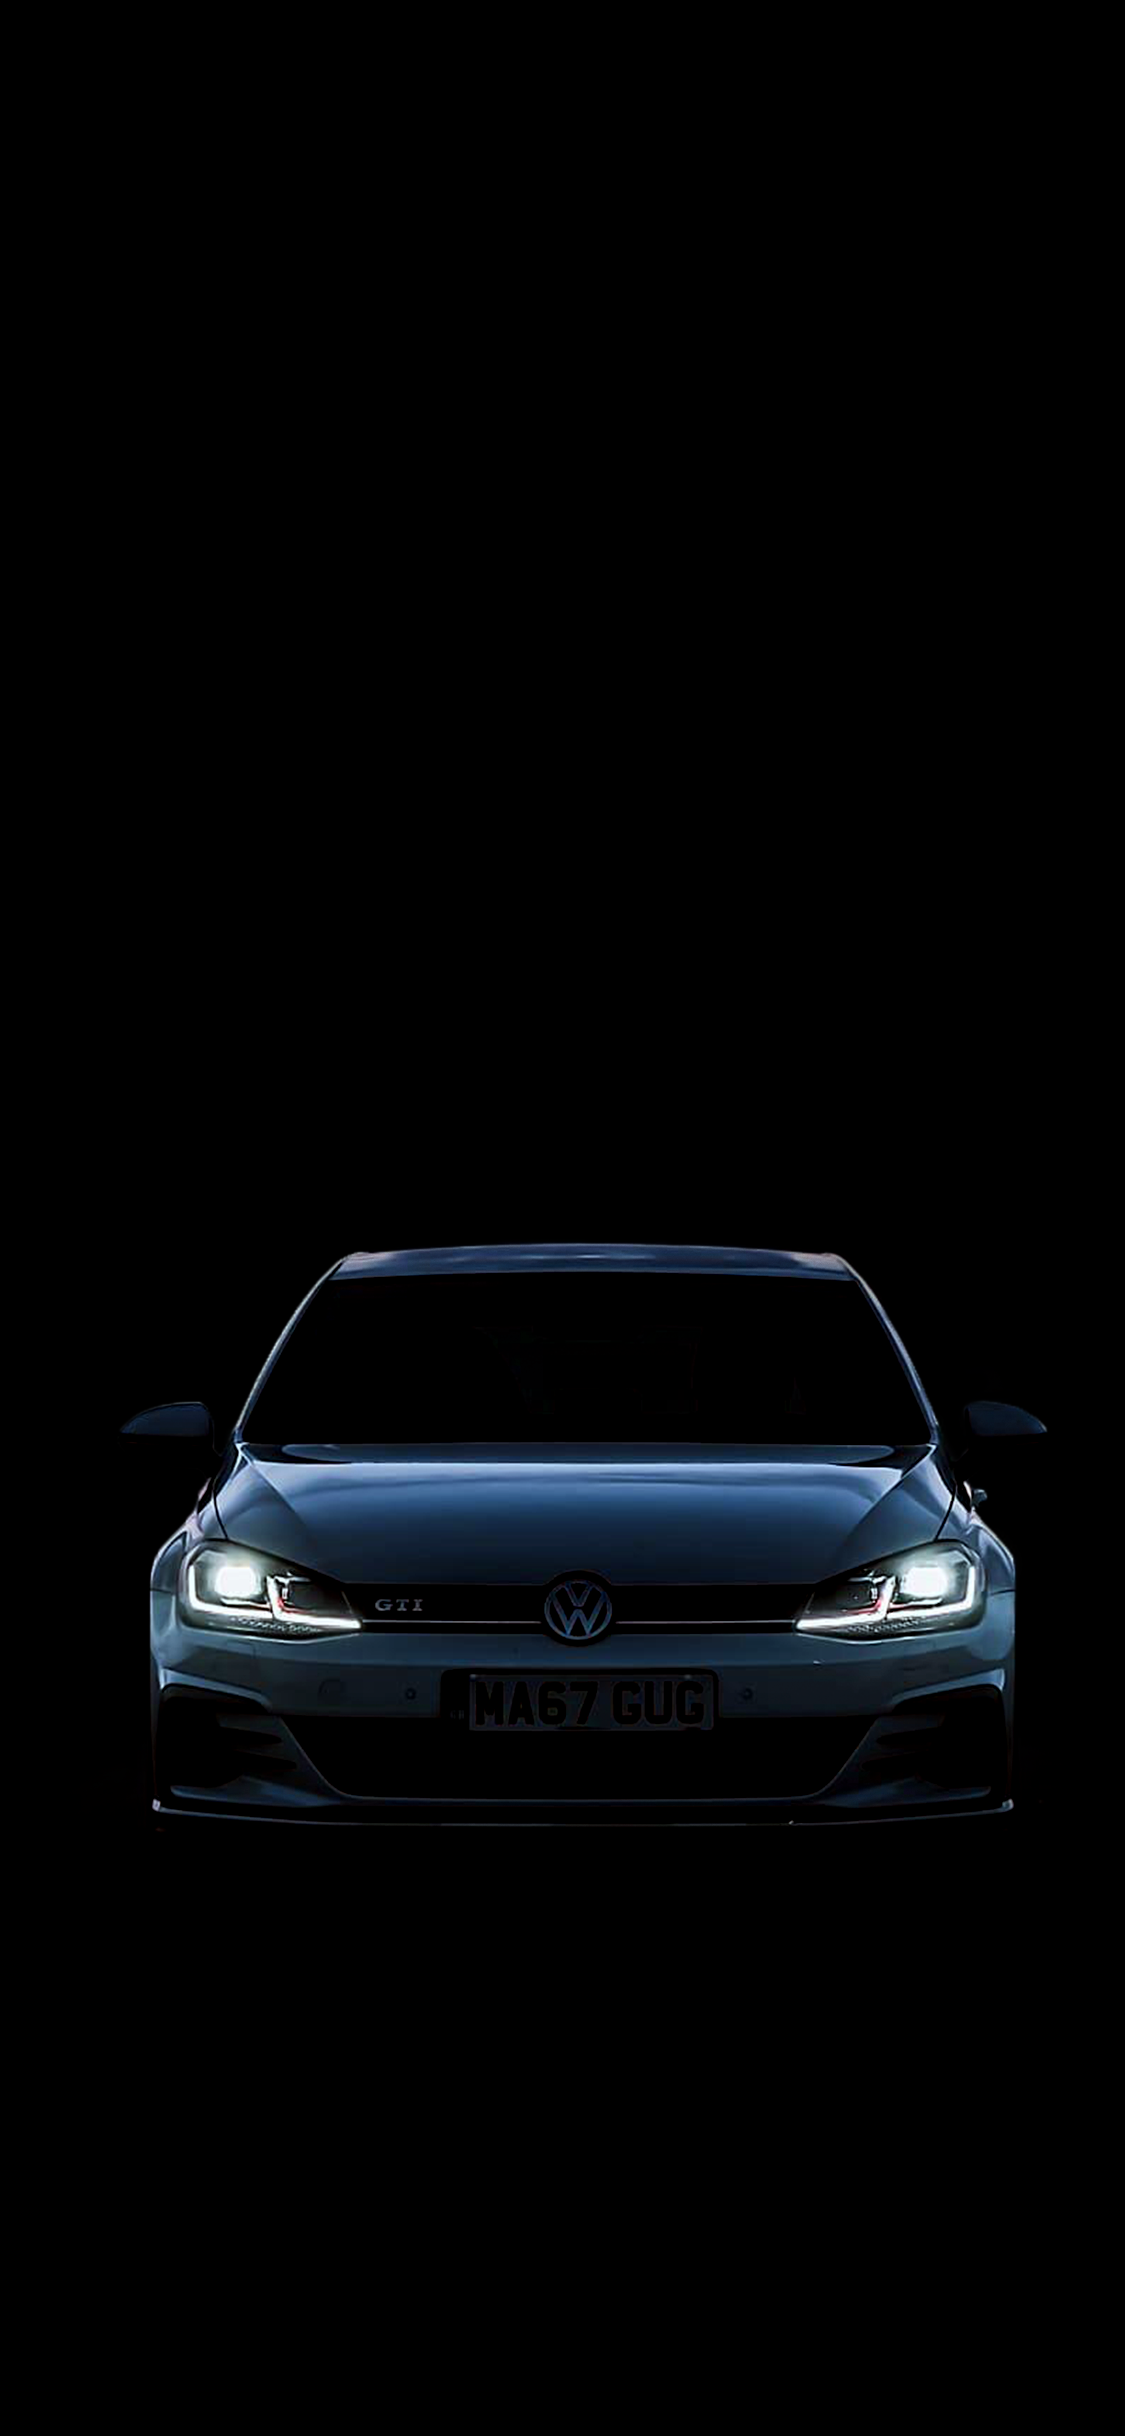 Volkswagen Golf Mk7 Wallpapers